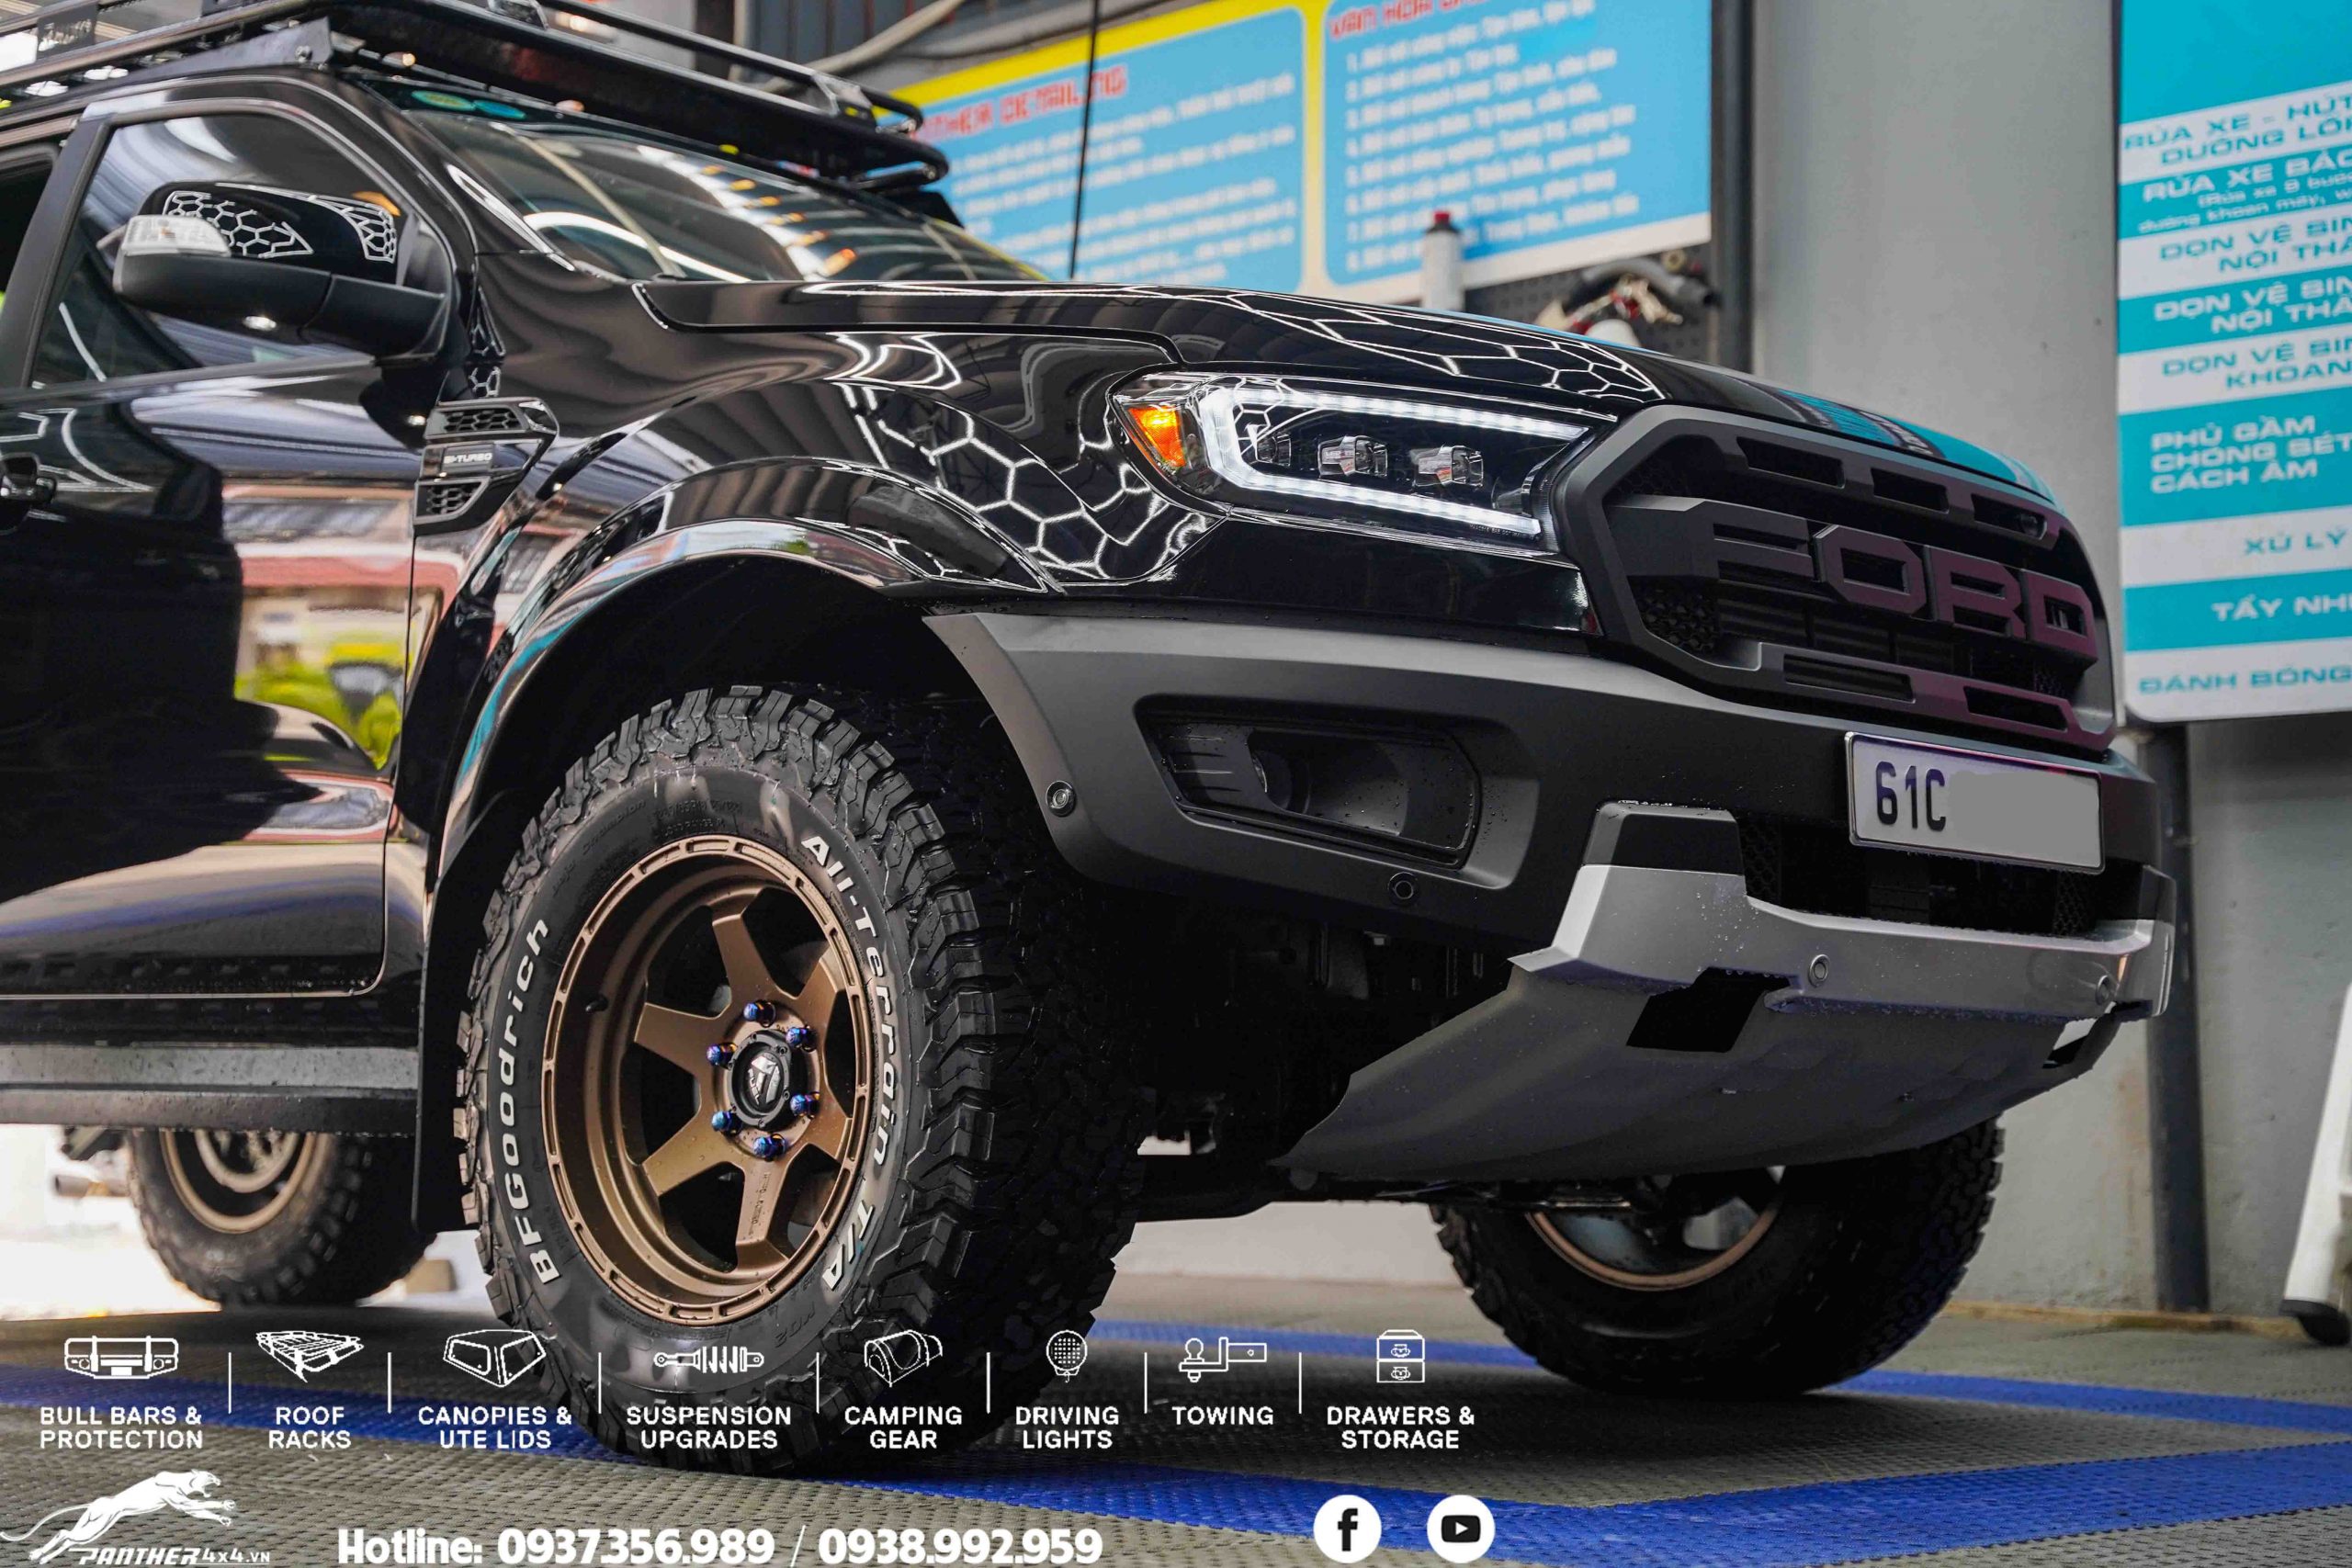 Ford Ranger Wildtrak 2021 độ Combo 100 triệu ở Bình Dương